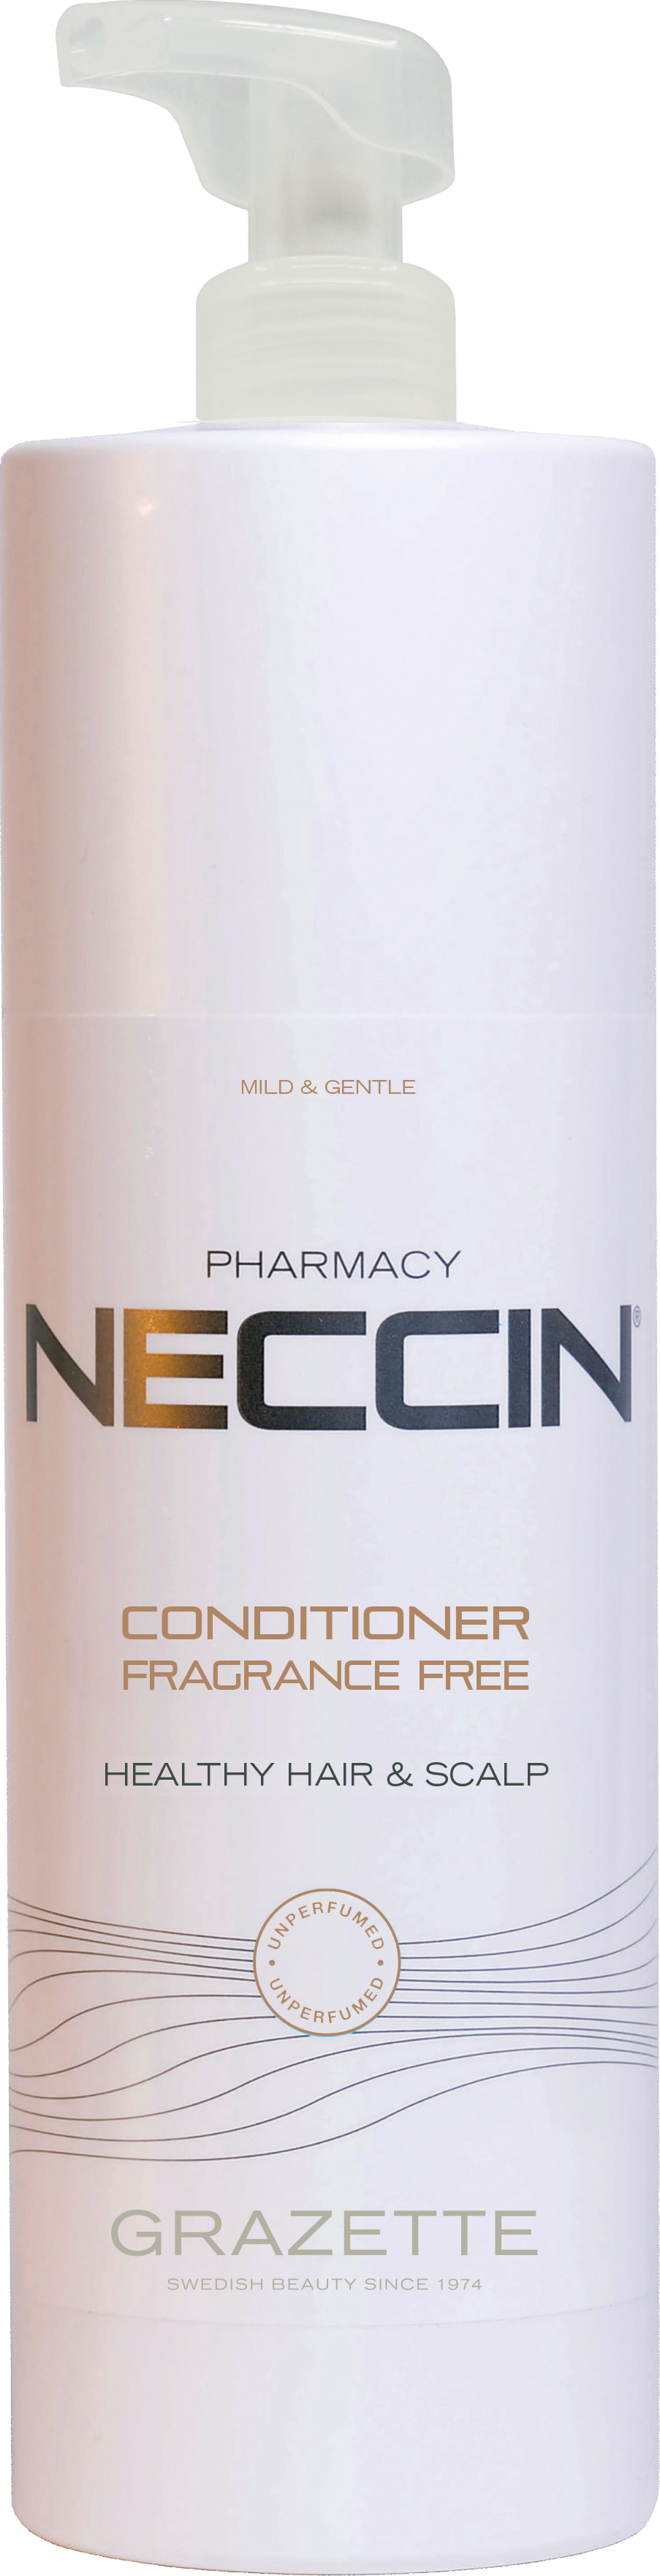 Neccin Conditioner Fragrance Free 1000ml